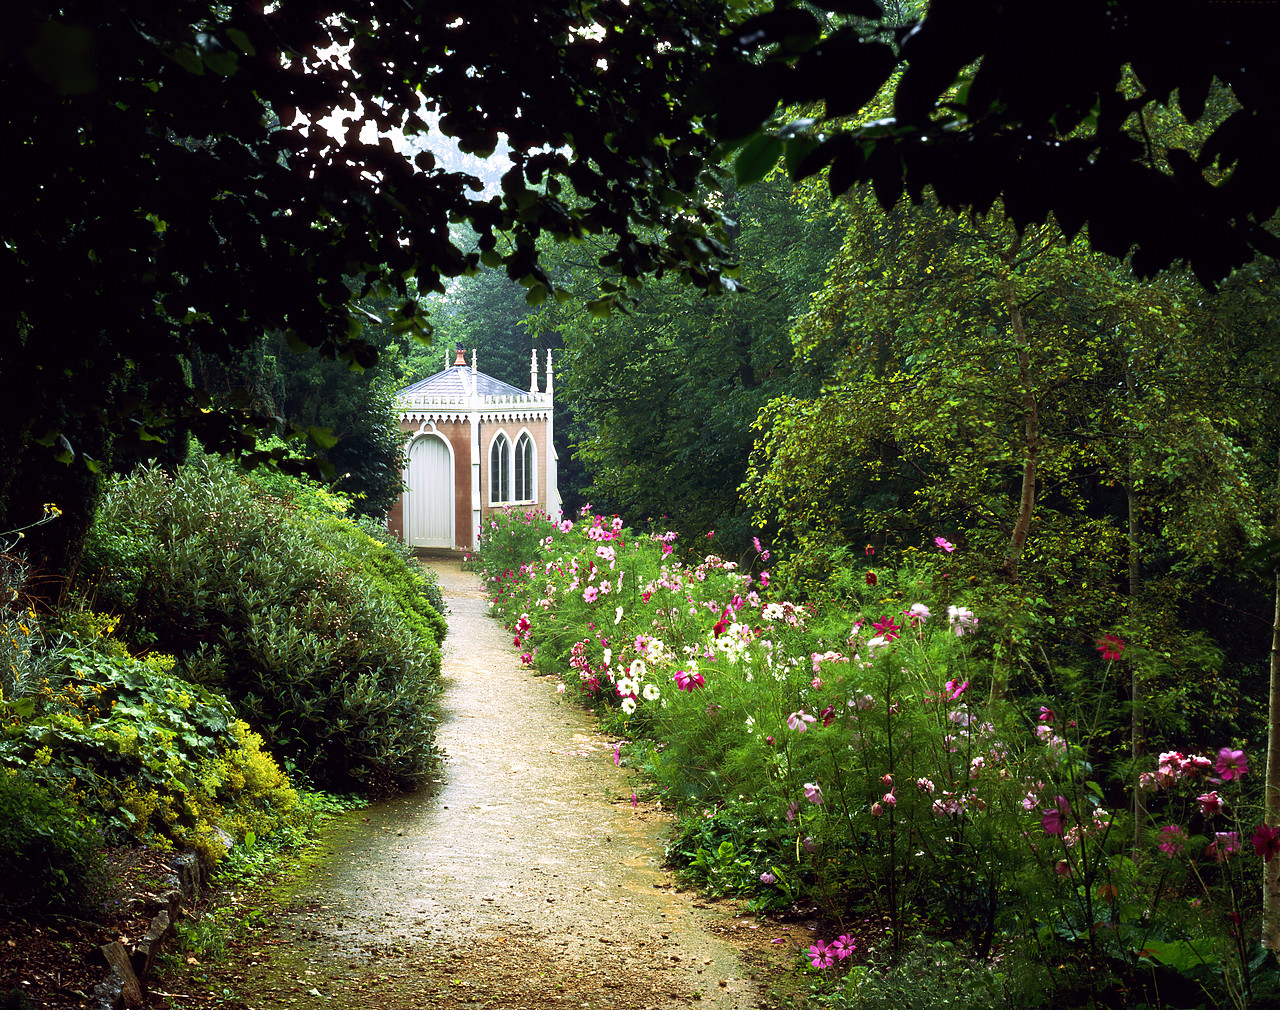 #970192-1 - Painswick Rococo Gardens, Painswick, Gloucestershire, England